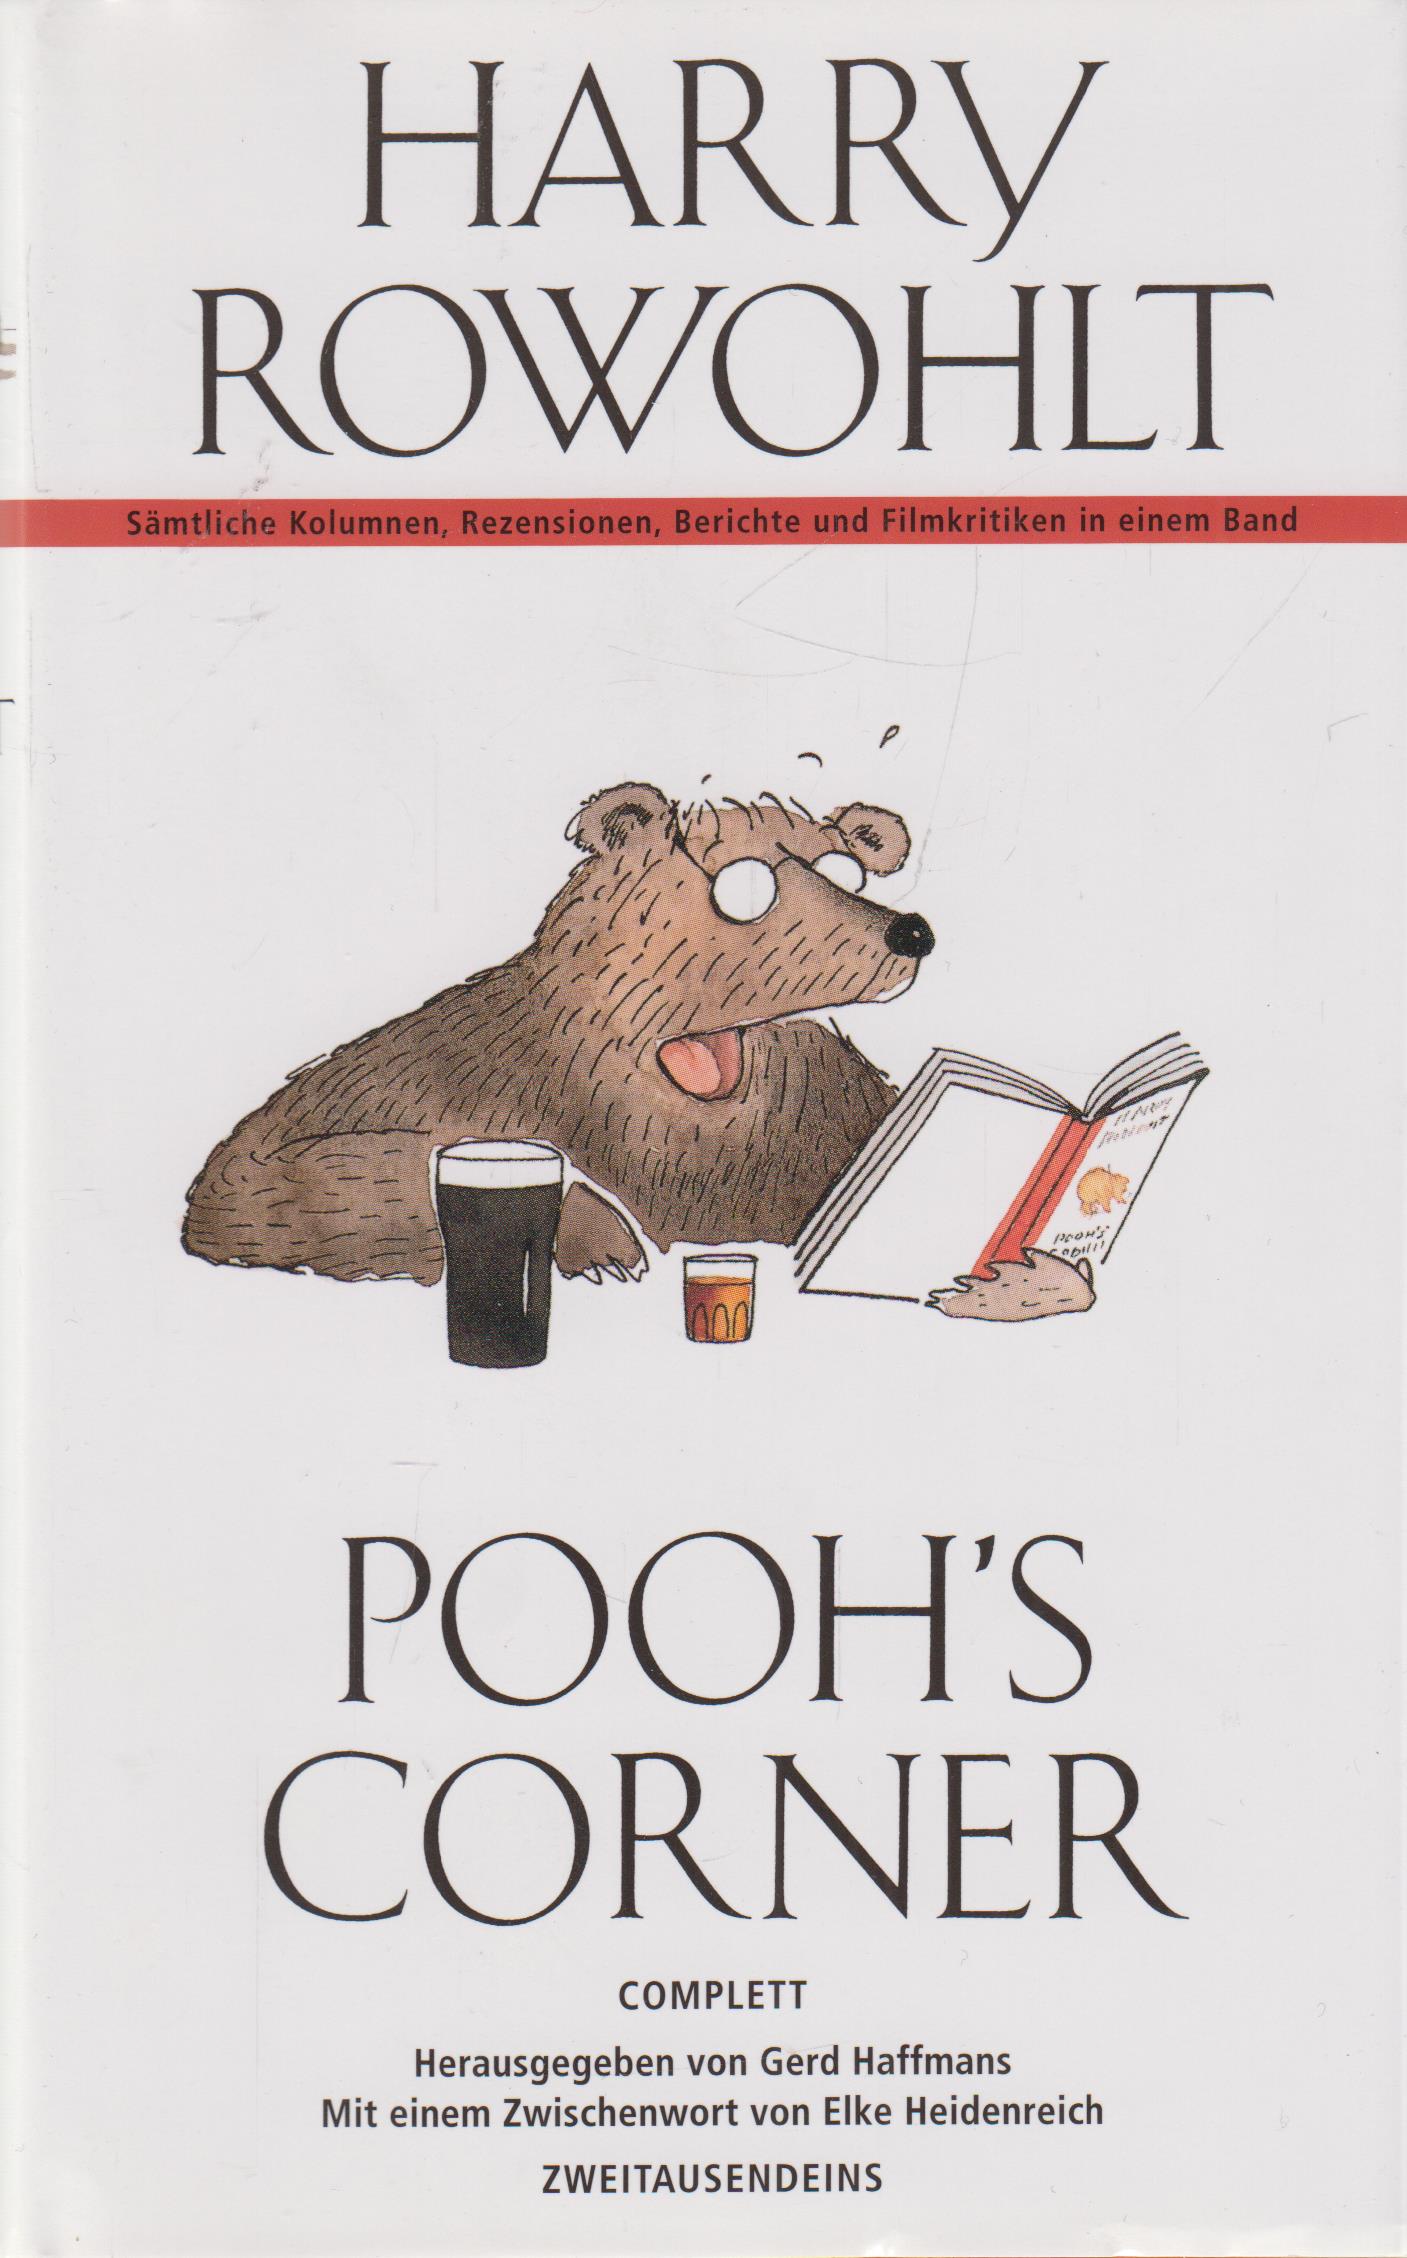 Pooh's Corner Complett. Sämtliche Kolumnen, Rezensionen, Berichte, Buch- und Filmkritiken - Rowohlt, Harry